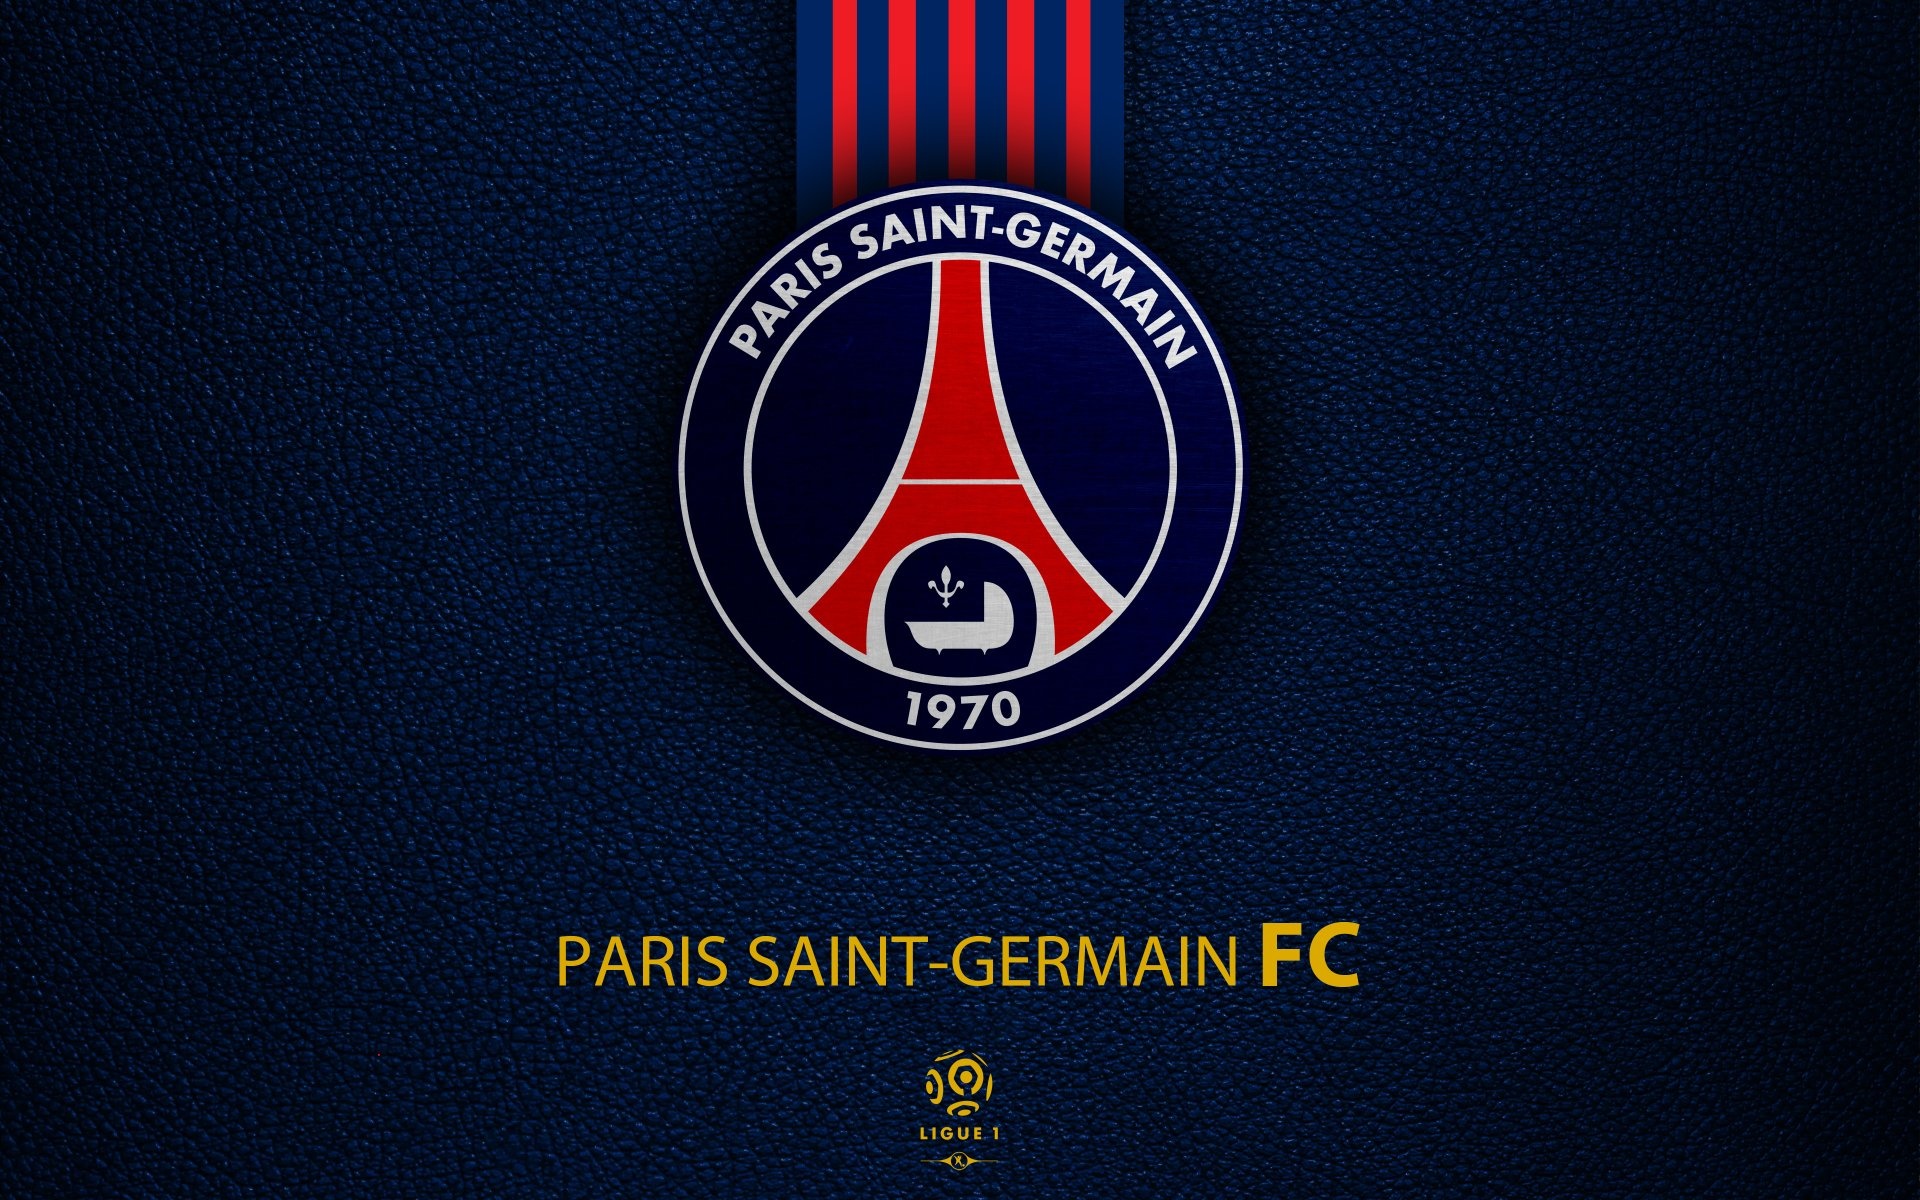 Paris Saint-Germain: Ranks 5th in the European financial ranking of football clubs. 1920x1200 HD Wallpaper.